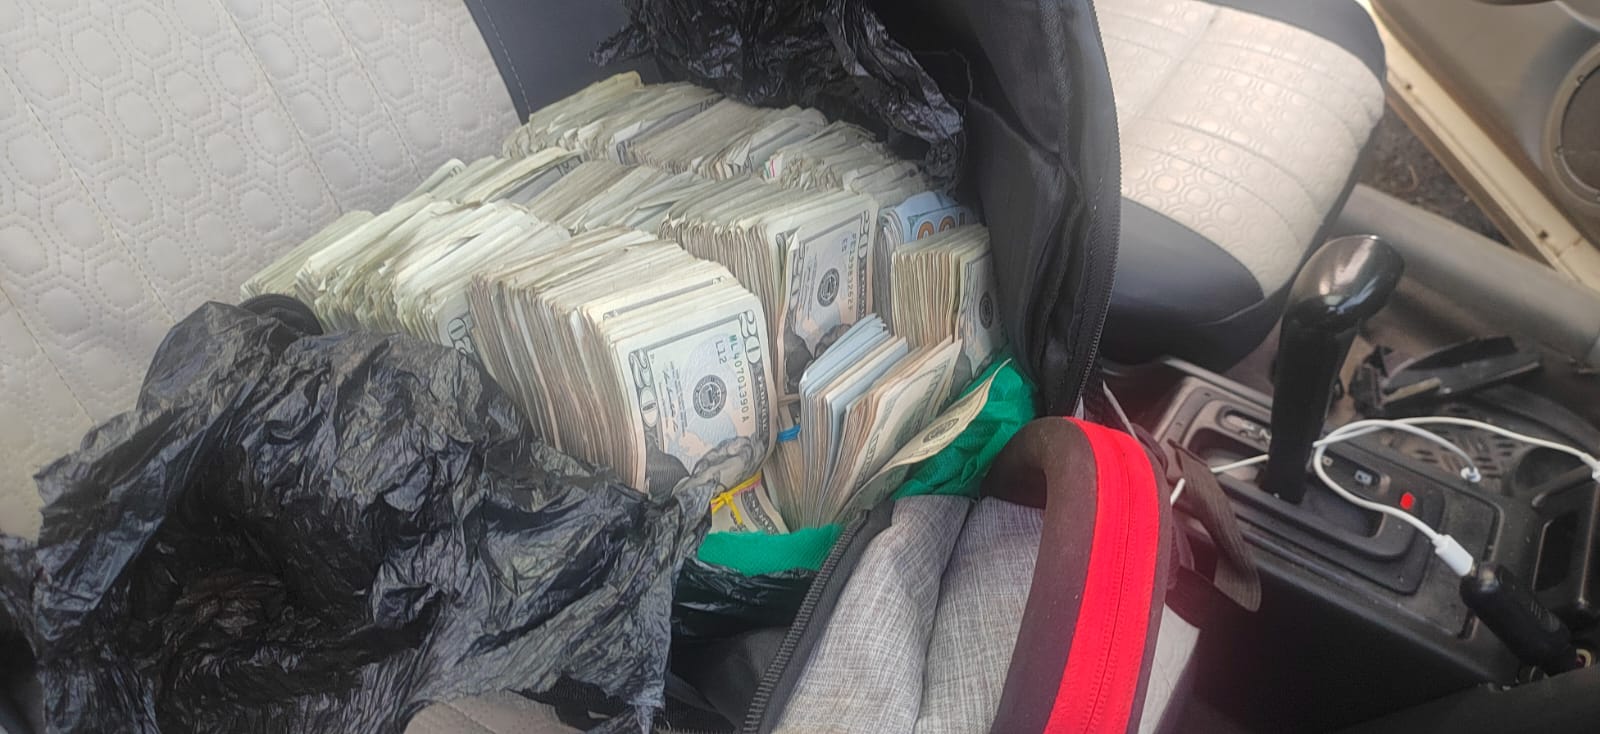 Tras persecución, policía decomisó fajos de dinero, drogas y armas de fuego